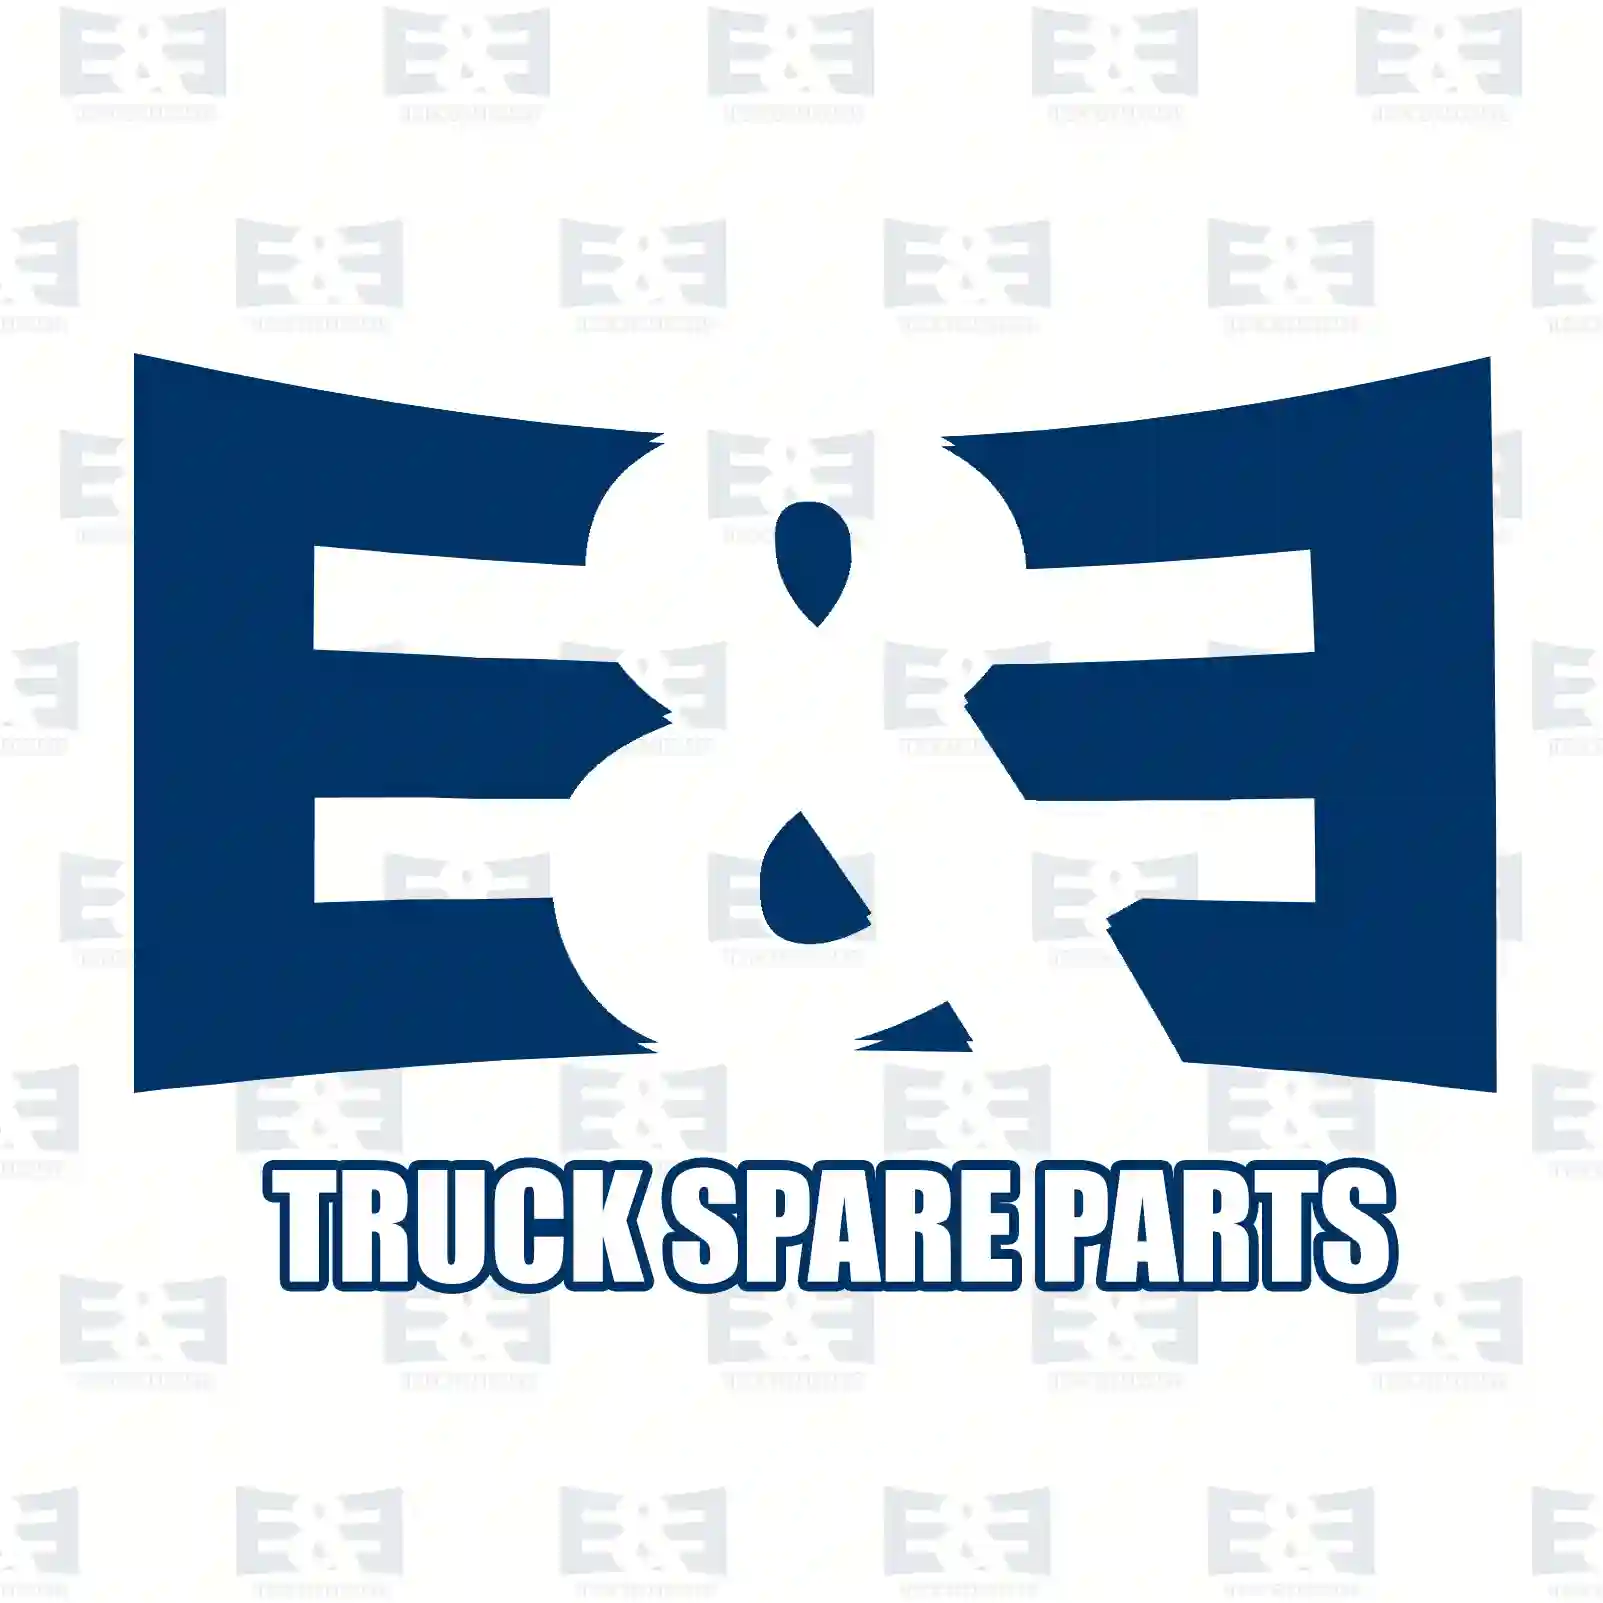 Cover, right, 2E2275288, 82403558, 841893 ||  2E2275288 E&E Truck Spare Parts | Truck Spare Parts, Auotomotive Spare Parts Cover, right, 2E2275288, 82403558, 841893 ||  2E2275288 E&E Truck Spare Parts | Truck Spare Parts, Auotomotive Spare Parts